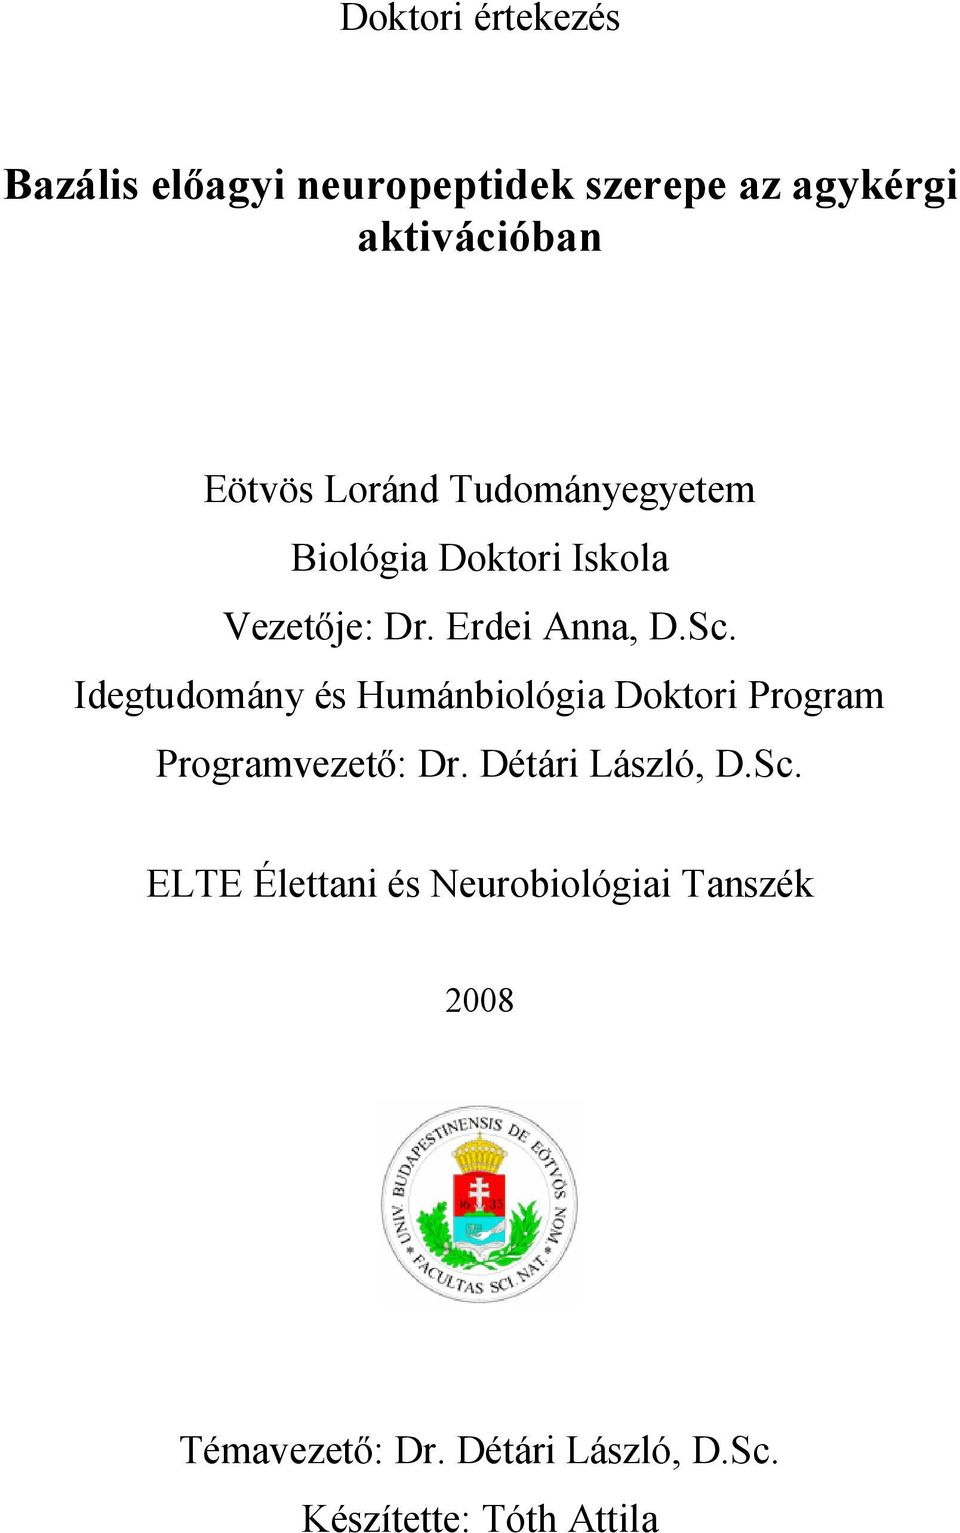 Idegtudomány és Humánbiológia Doktori Program Programvezető: Dr. Détári László, D.Sc.